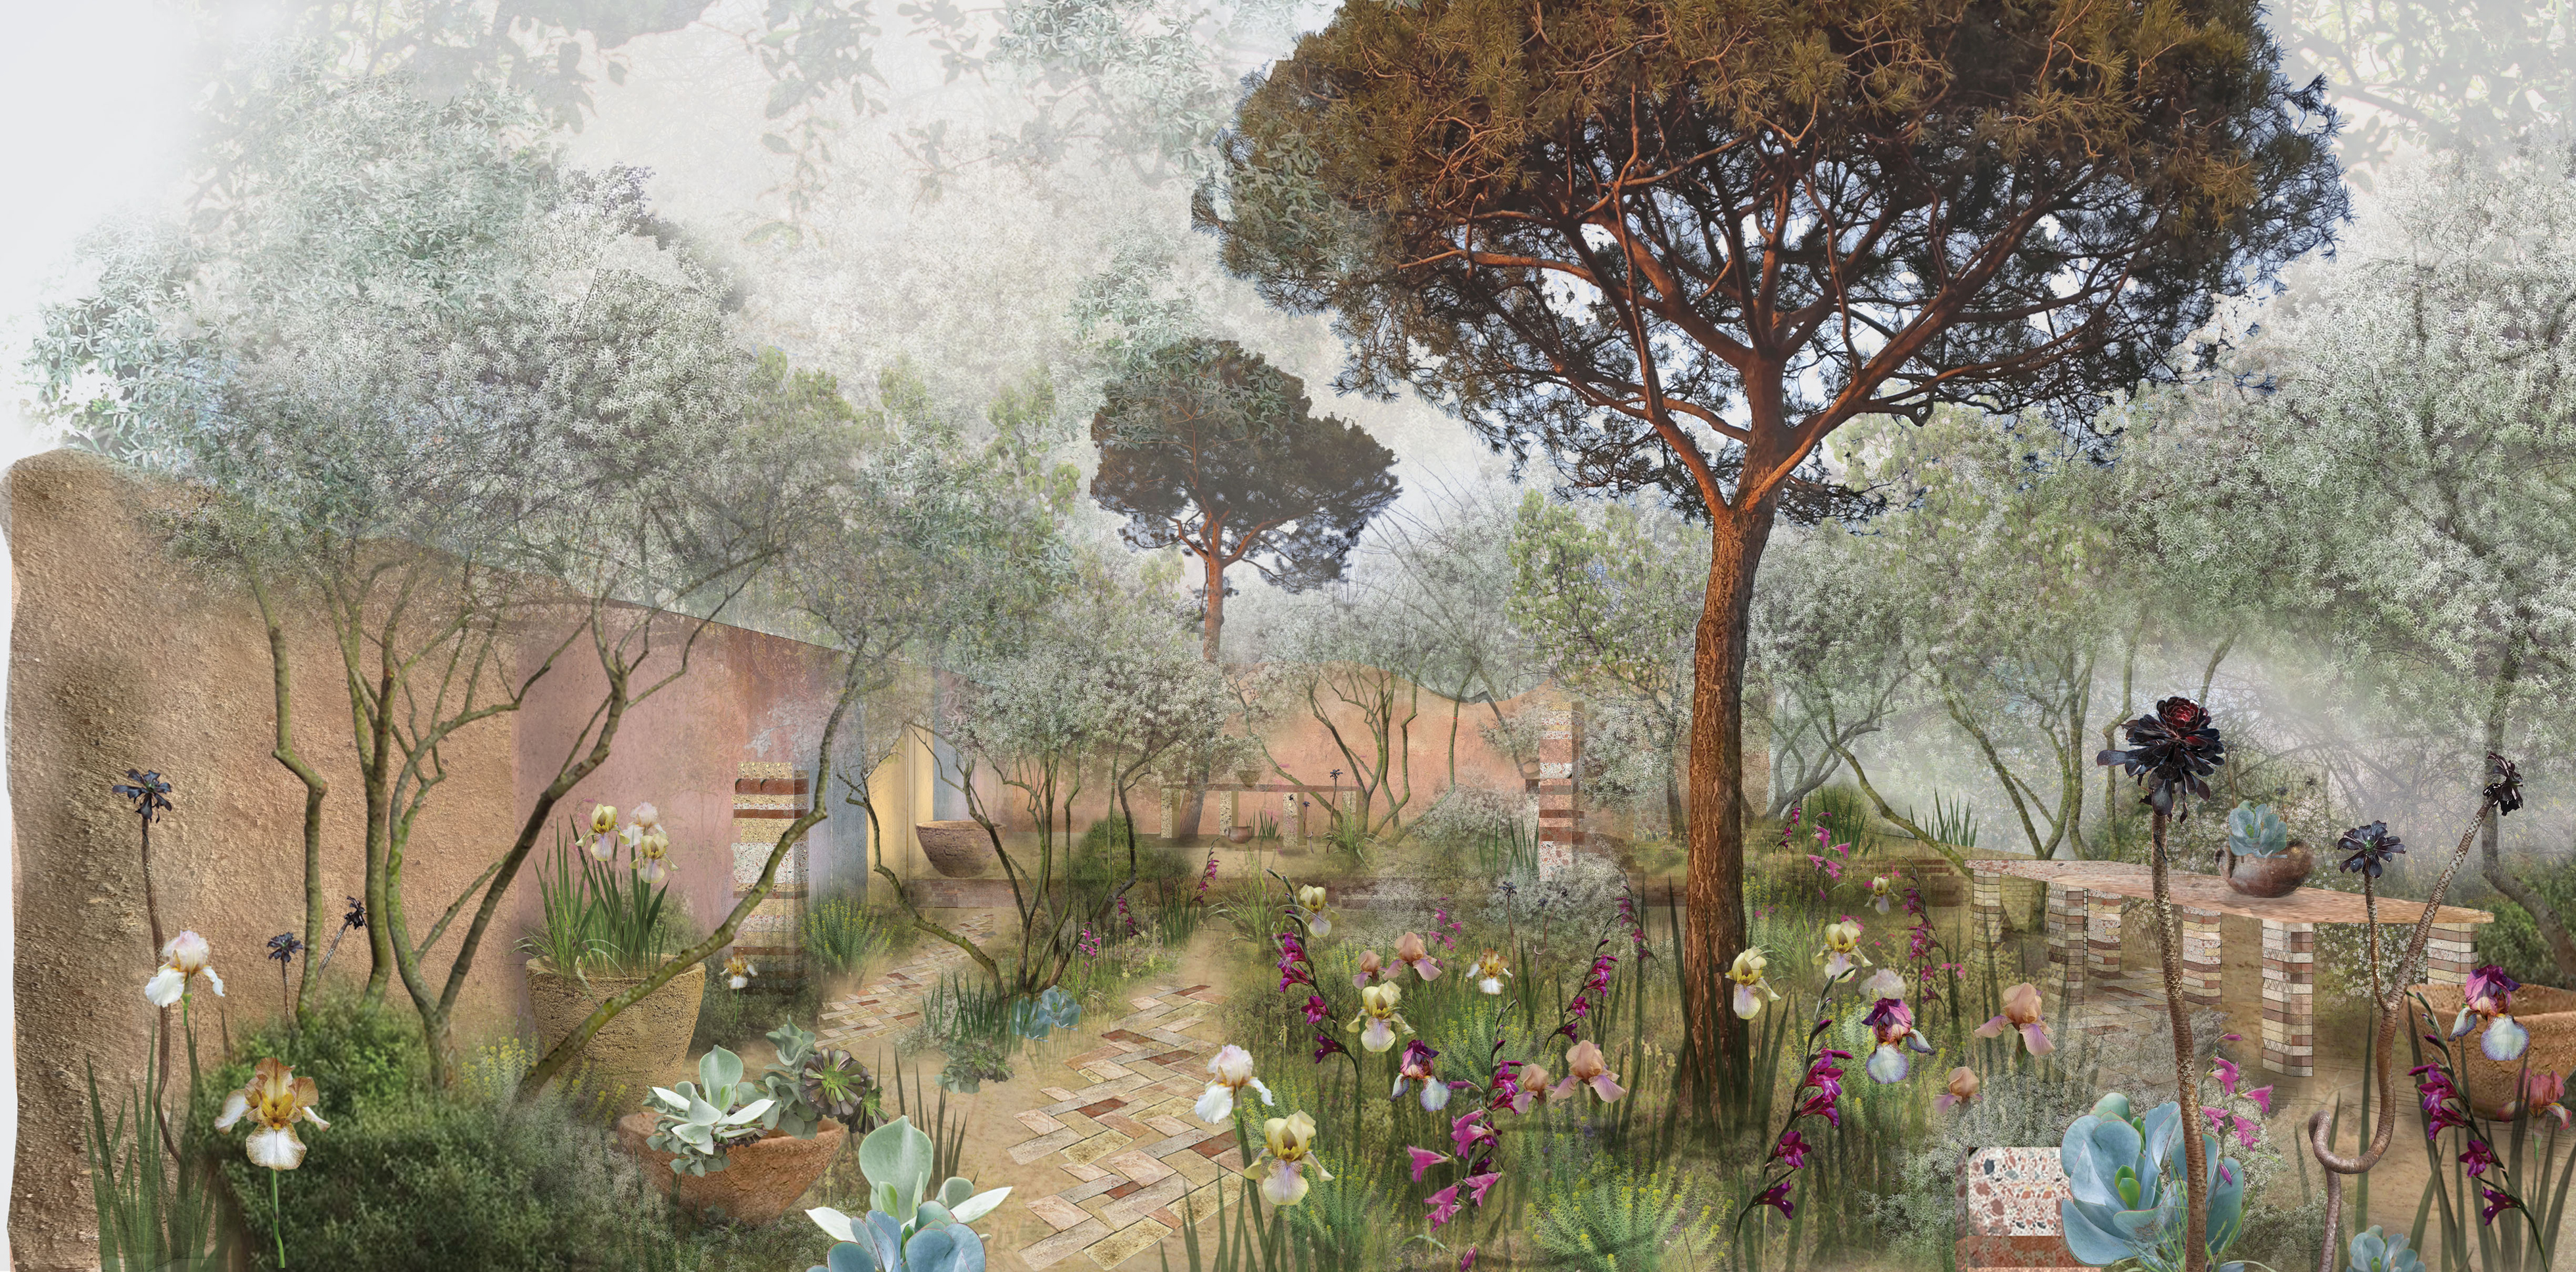 Artwork of The Nurture Landscapes Garden (Sarah Price Landscapes/PA)